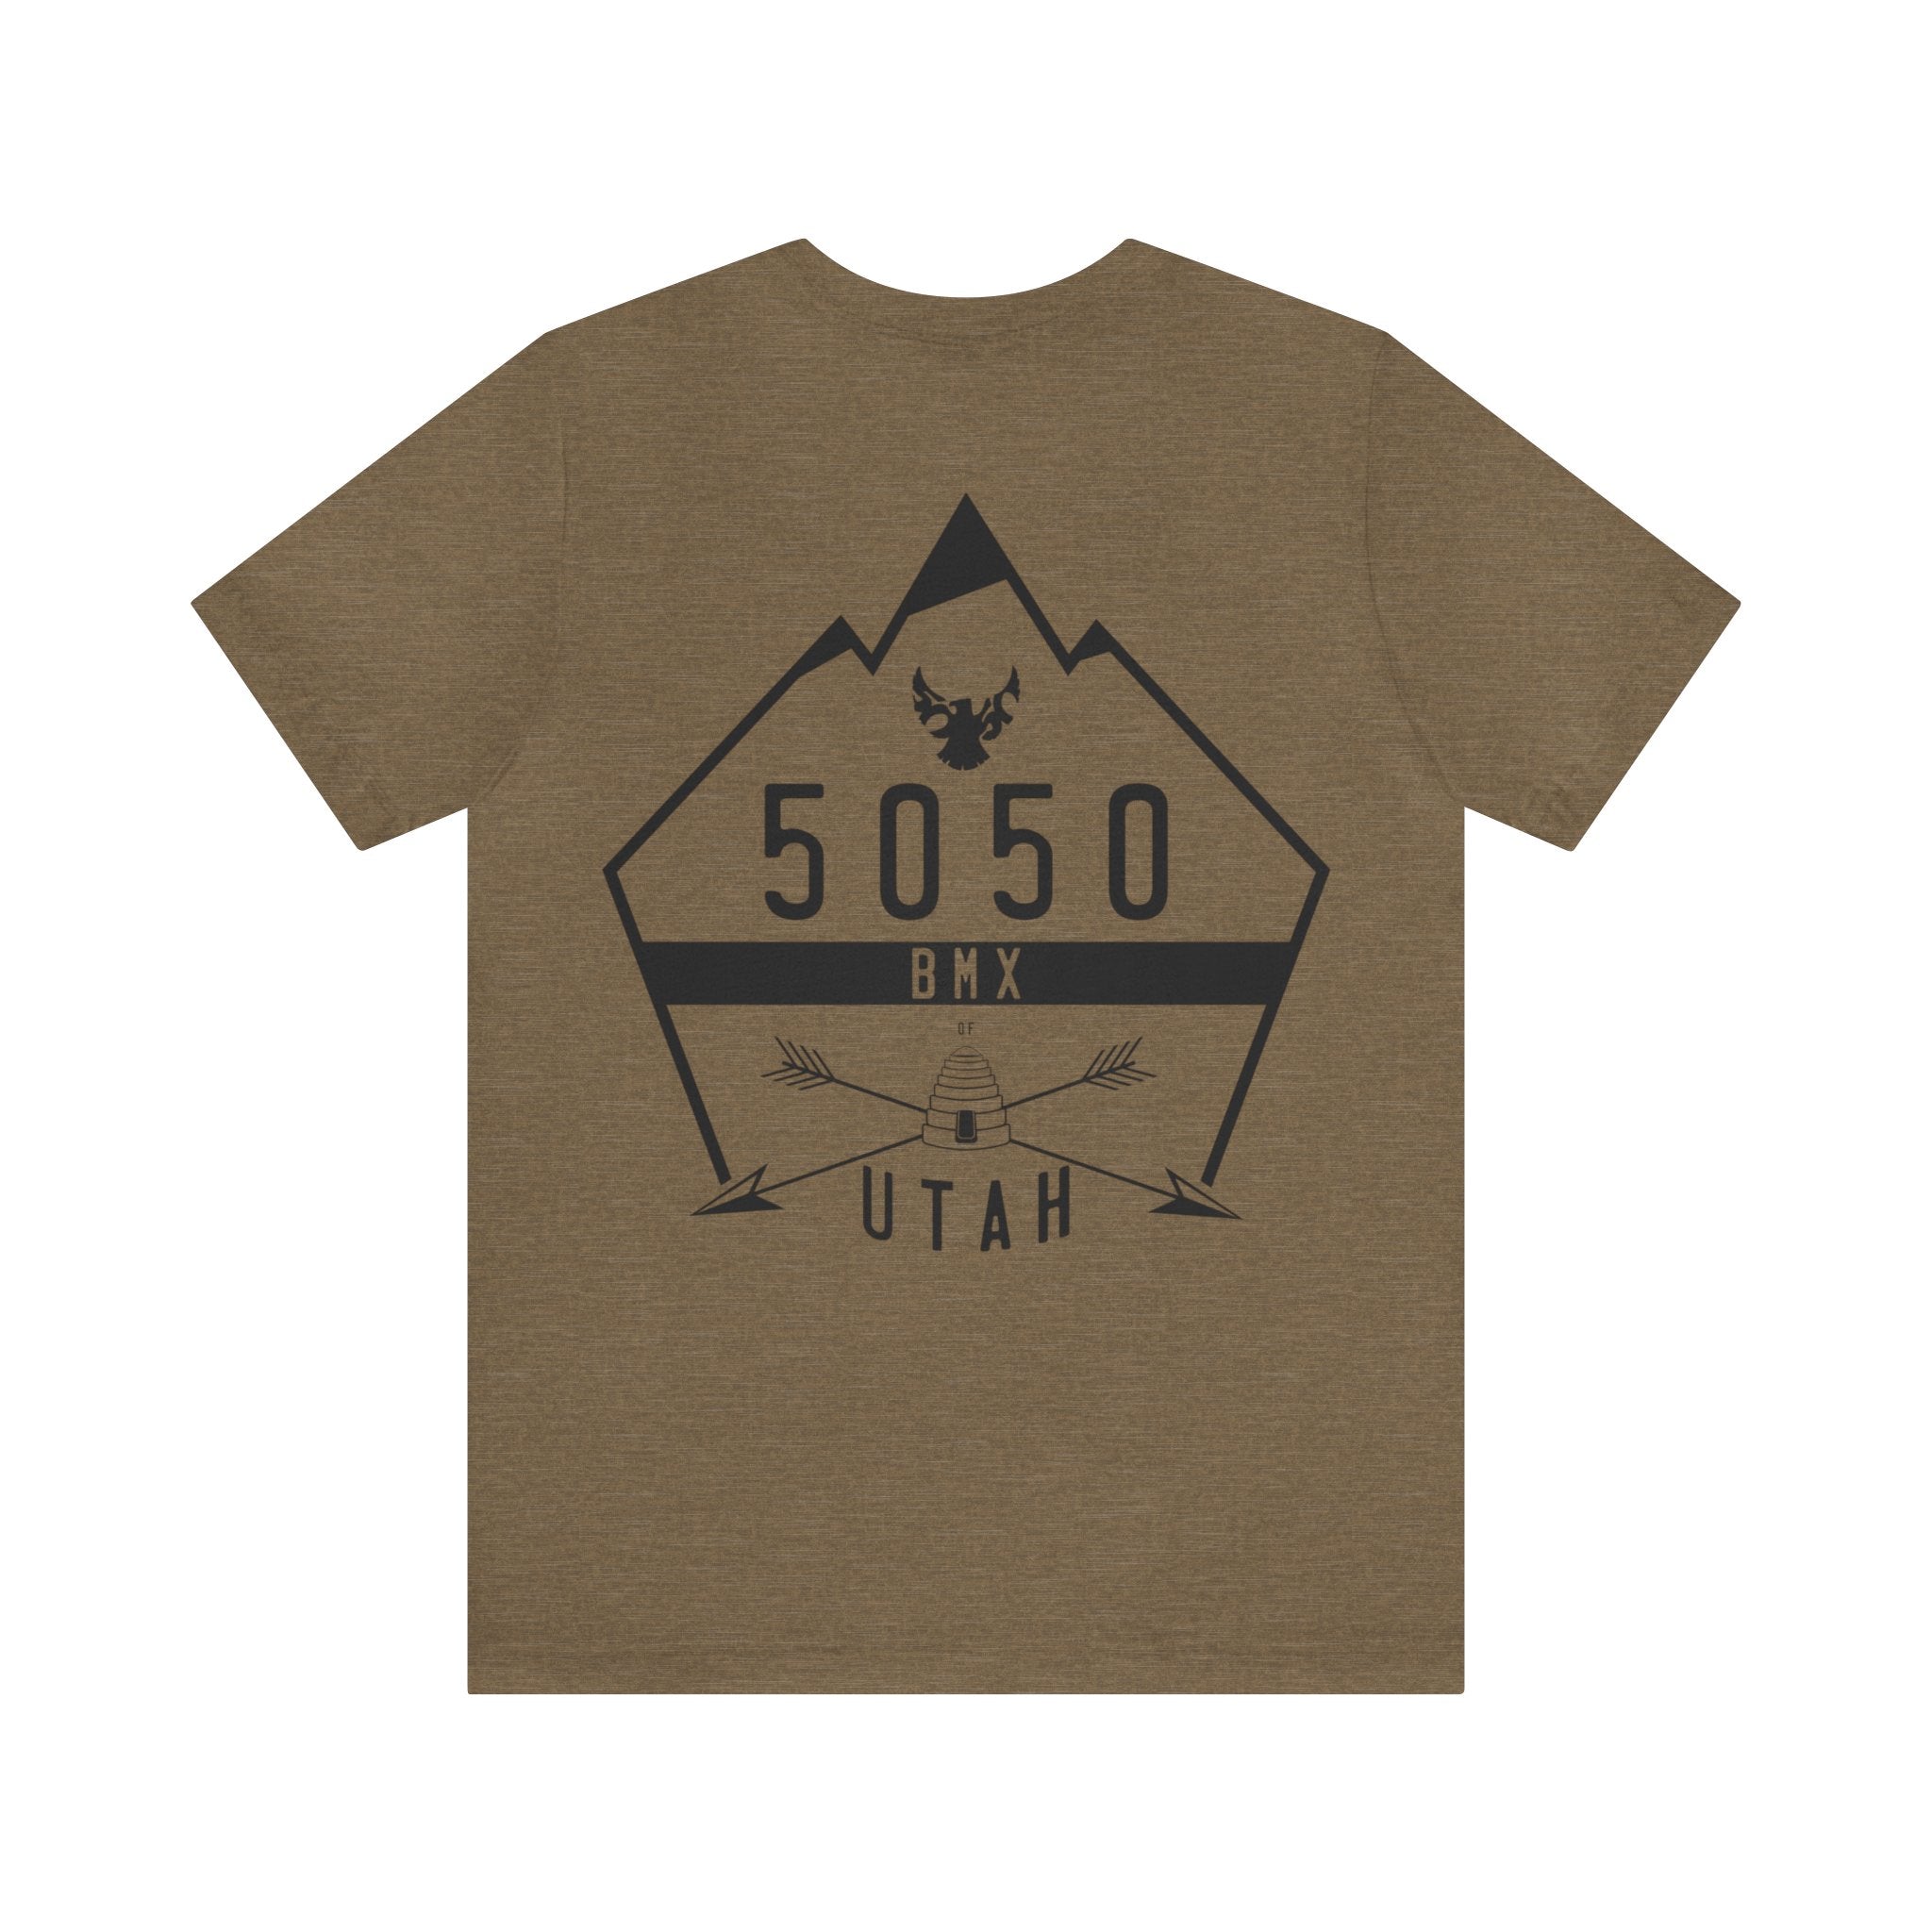 5050bmx Utah - Short Sleeve Tee